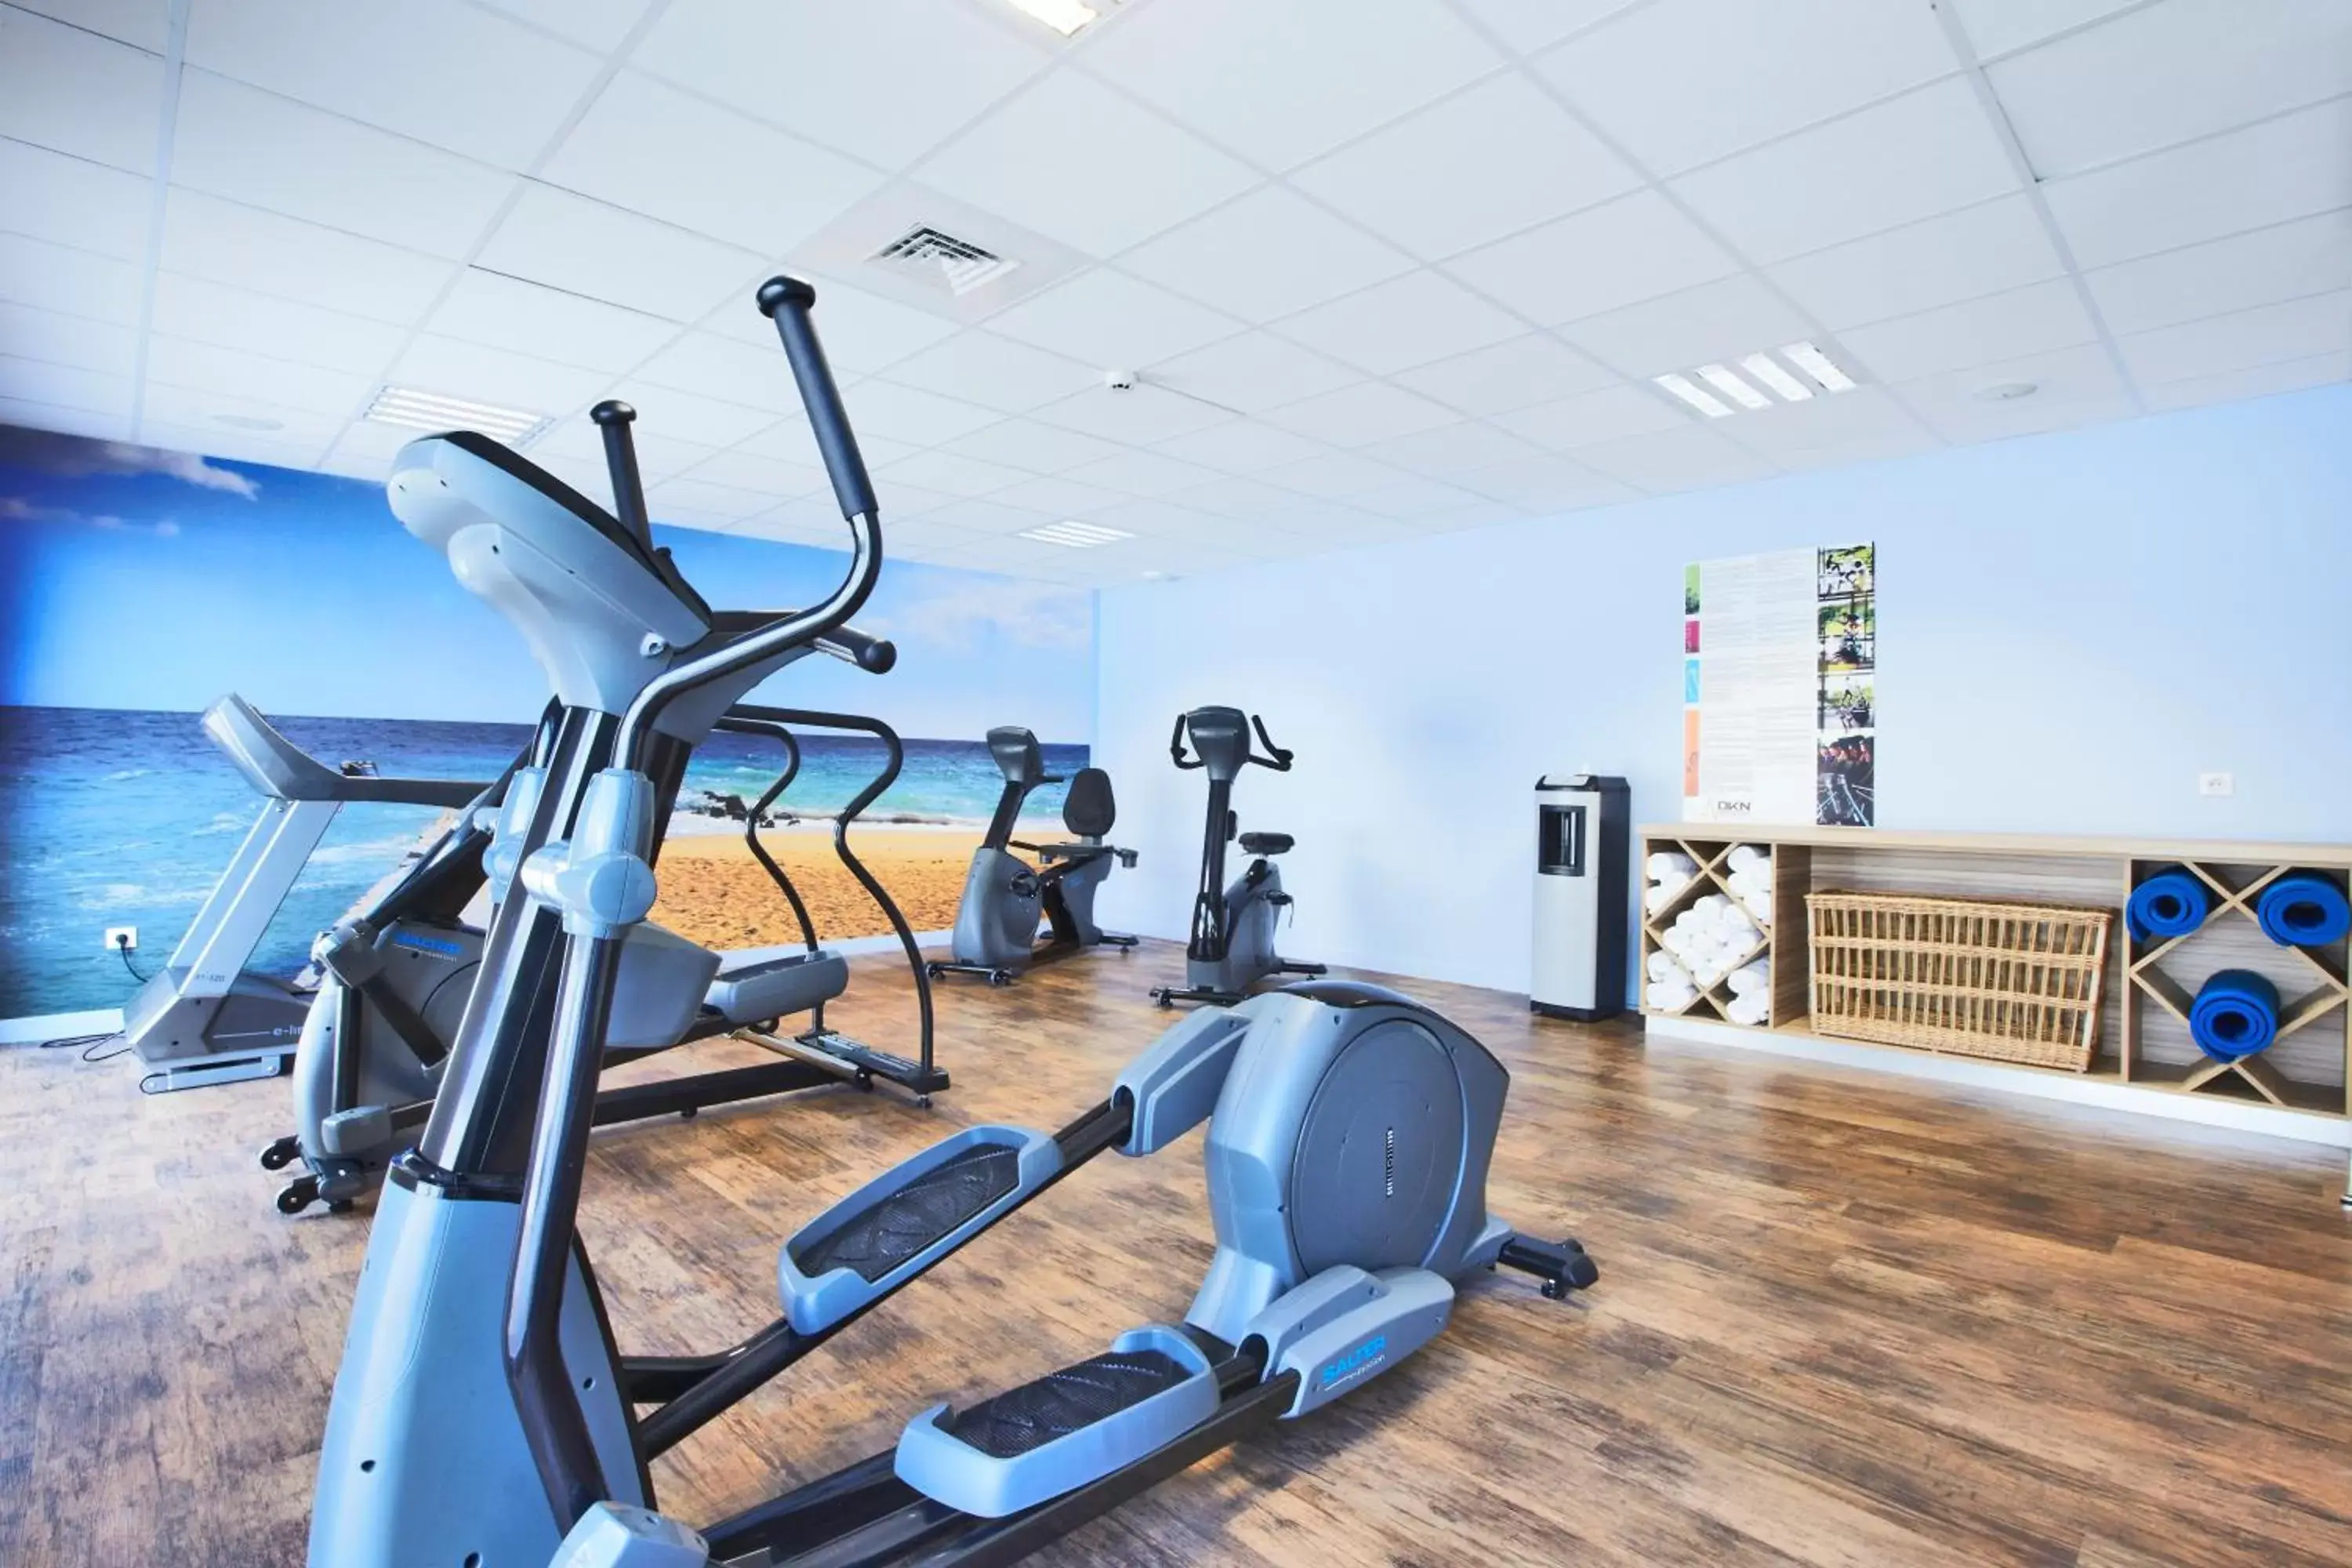 Fitness centre/facilities, Fitness Center/Facilities in Kyriad La Rochelle Centre - Les Minimes